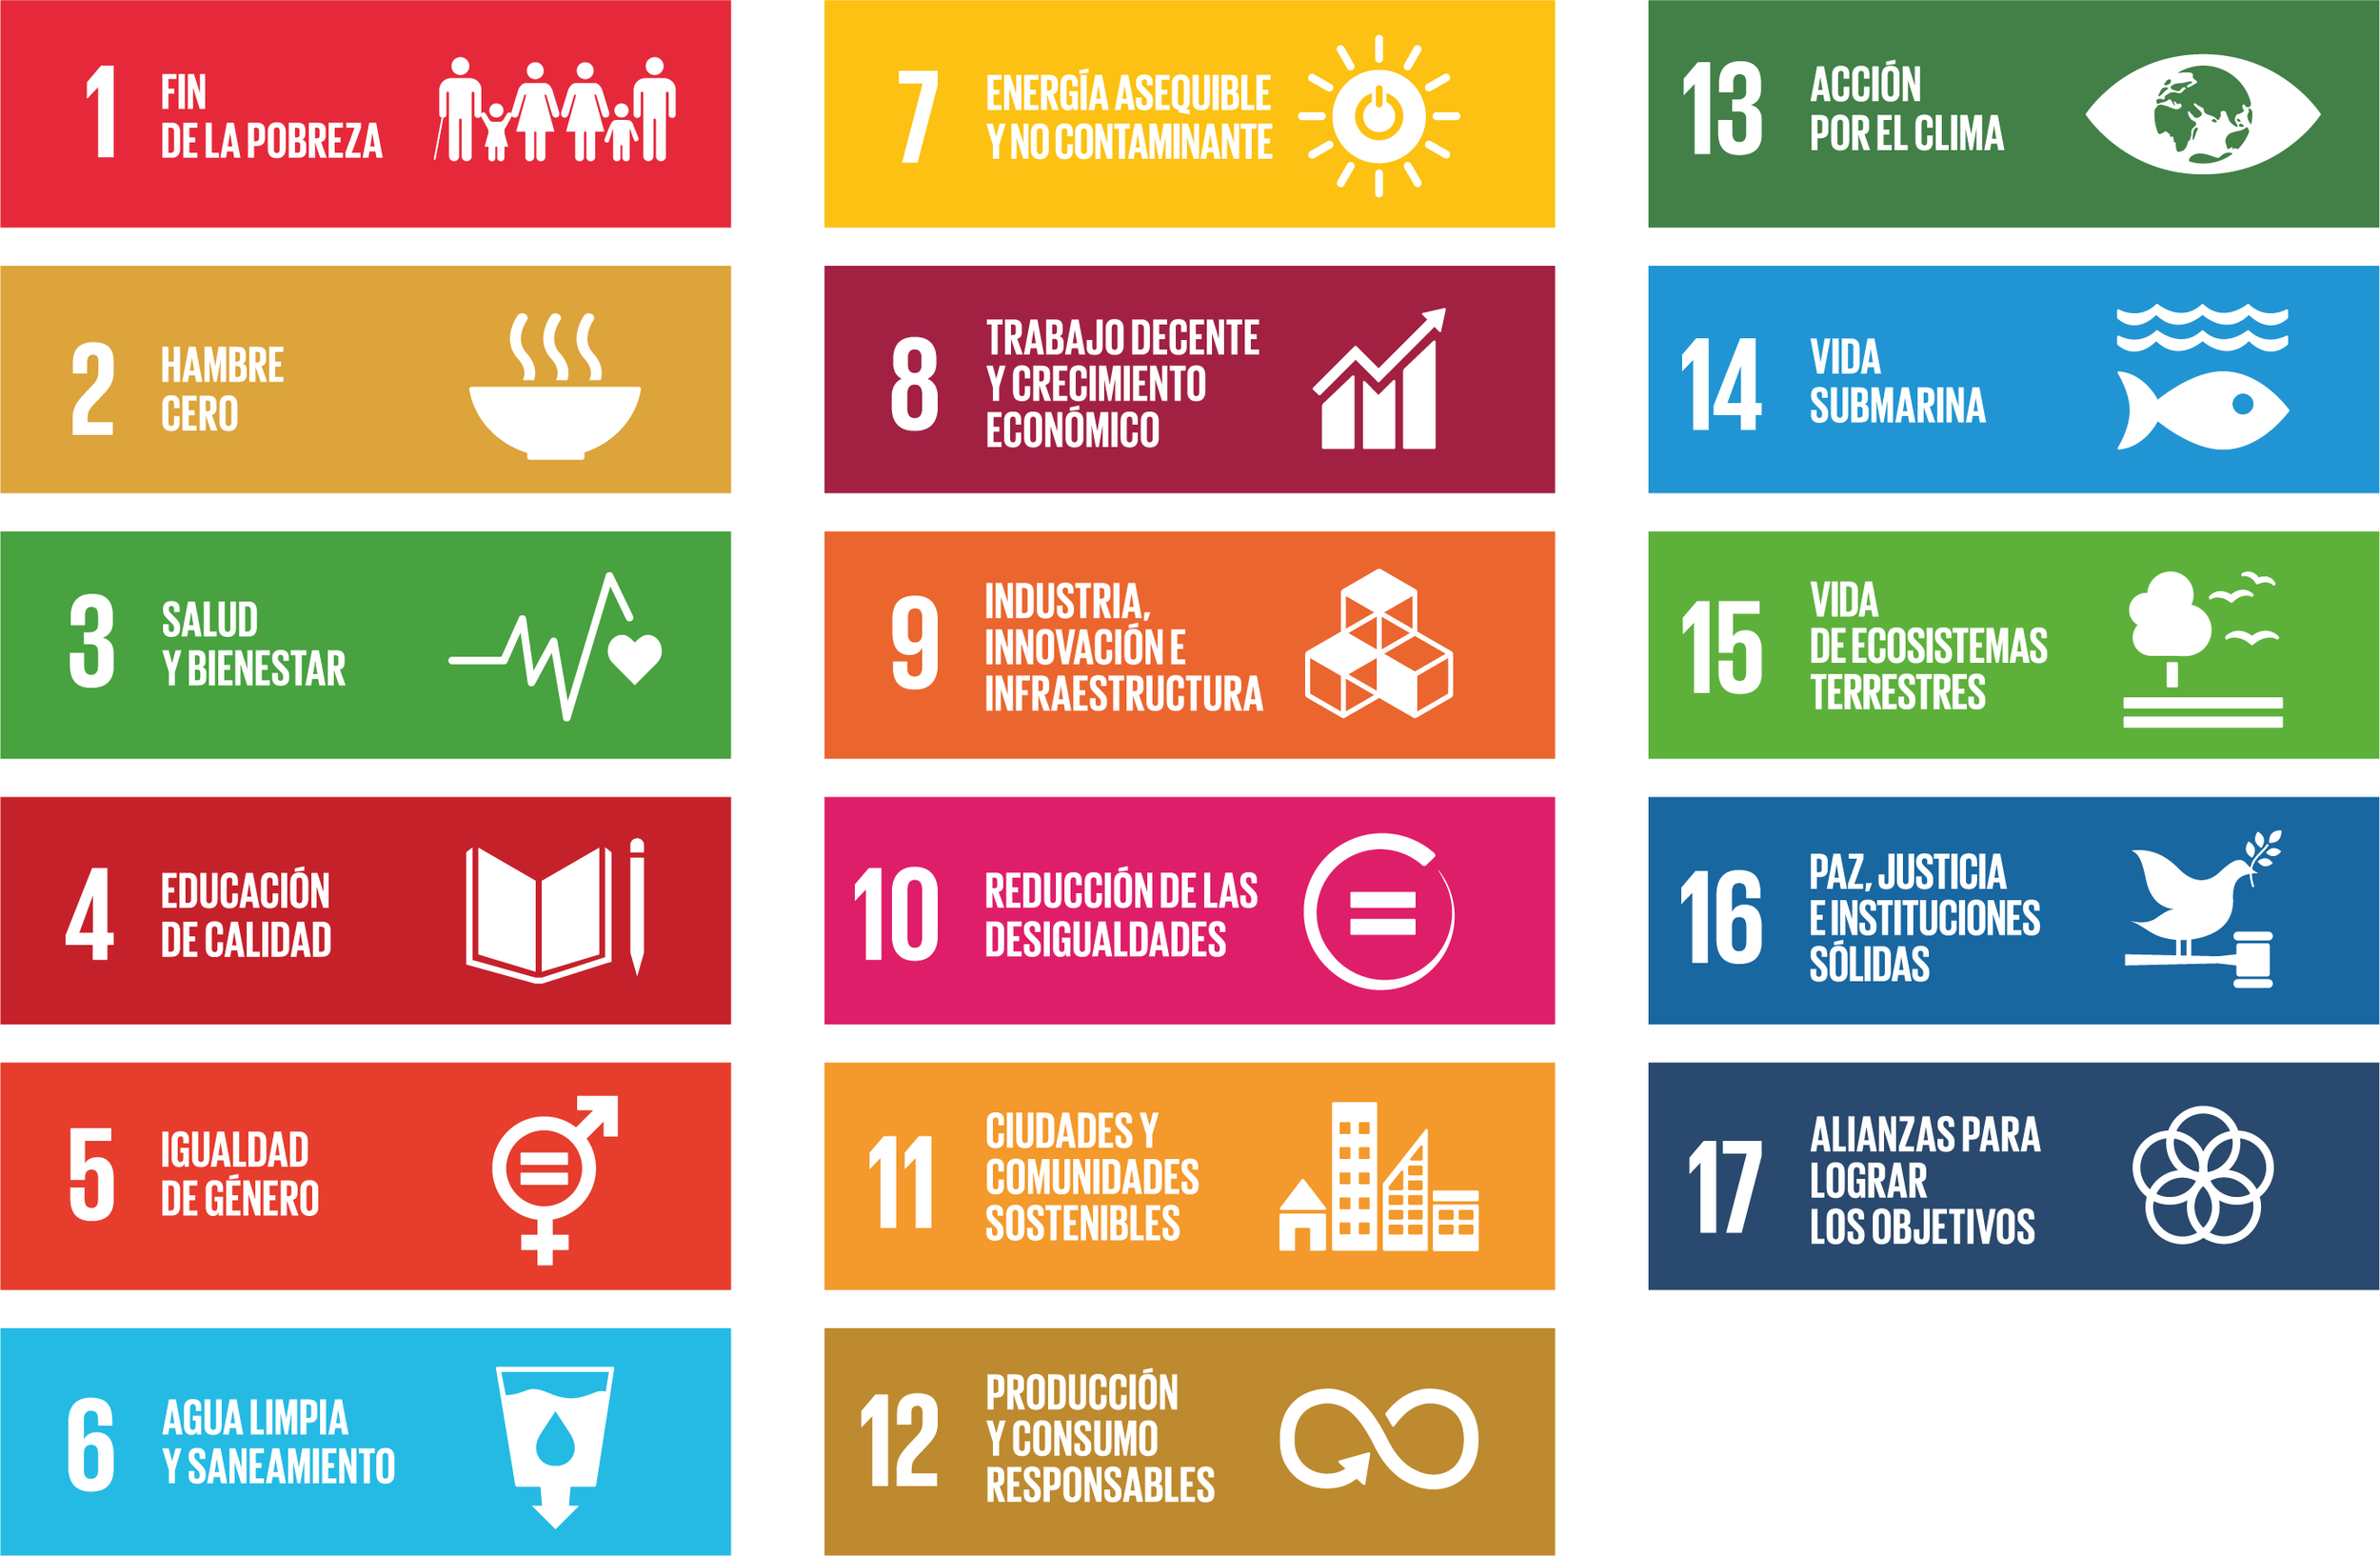 Figura 1: Objetivos de Desarrollo Sostenible de la Agenda 2030